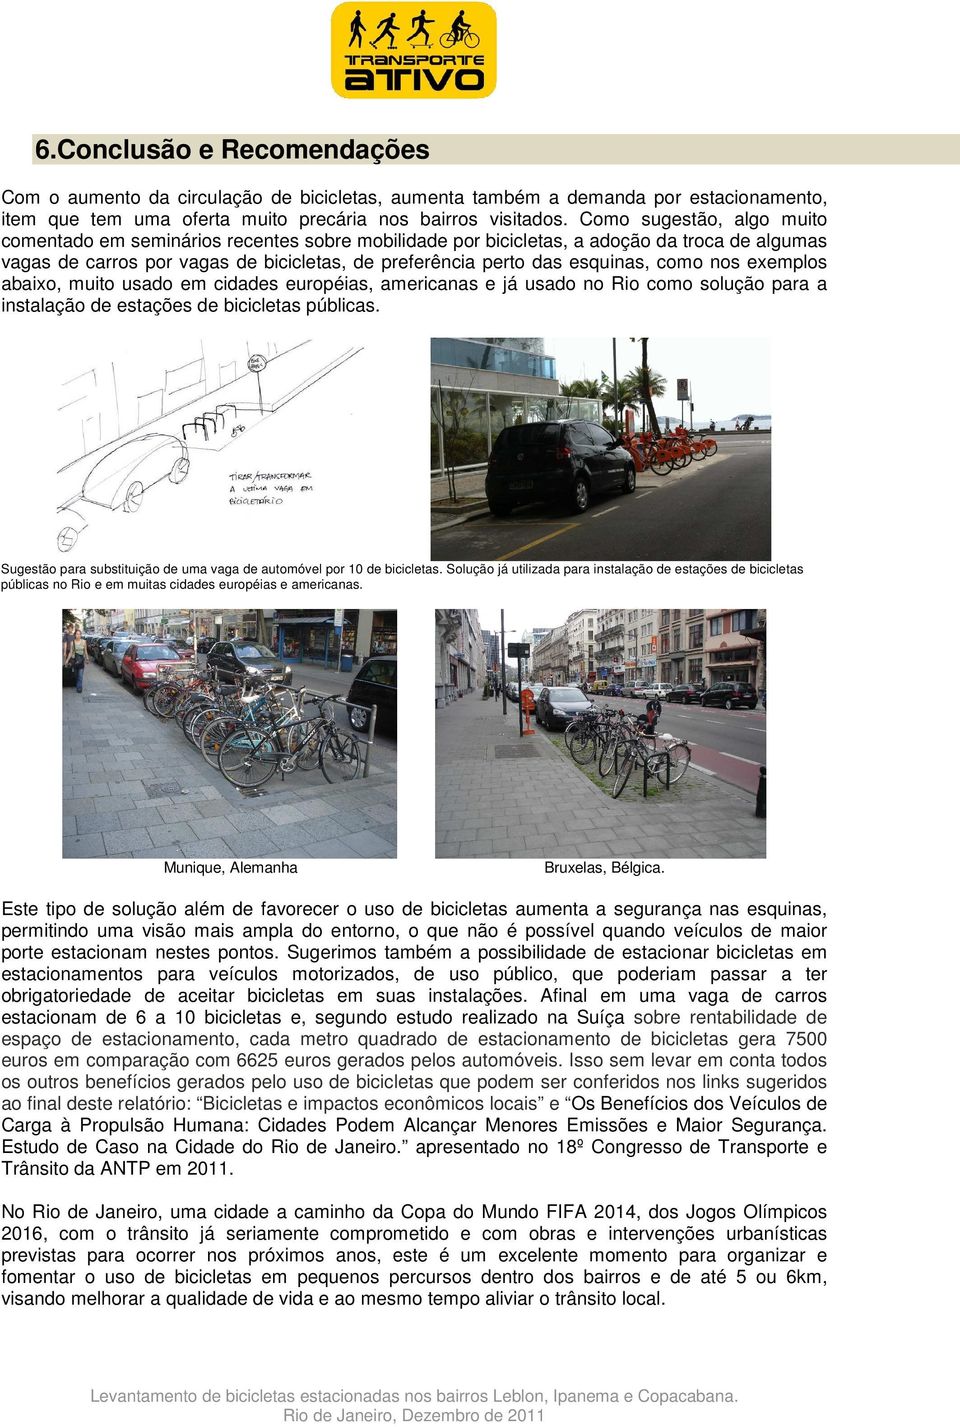 como nos exemplos abaixo, muito usado em cidades européias, americanas e já usado no Rio como solução para a instalação de estações de bicicletas públicas.